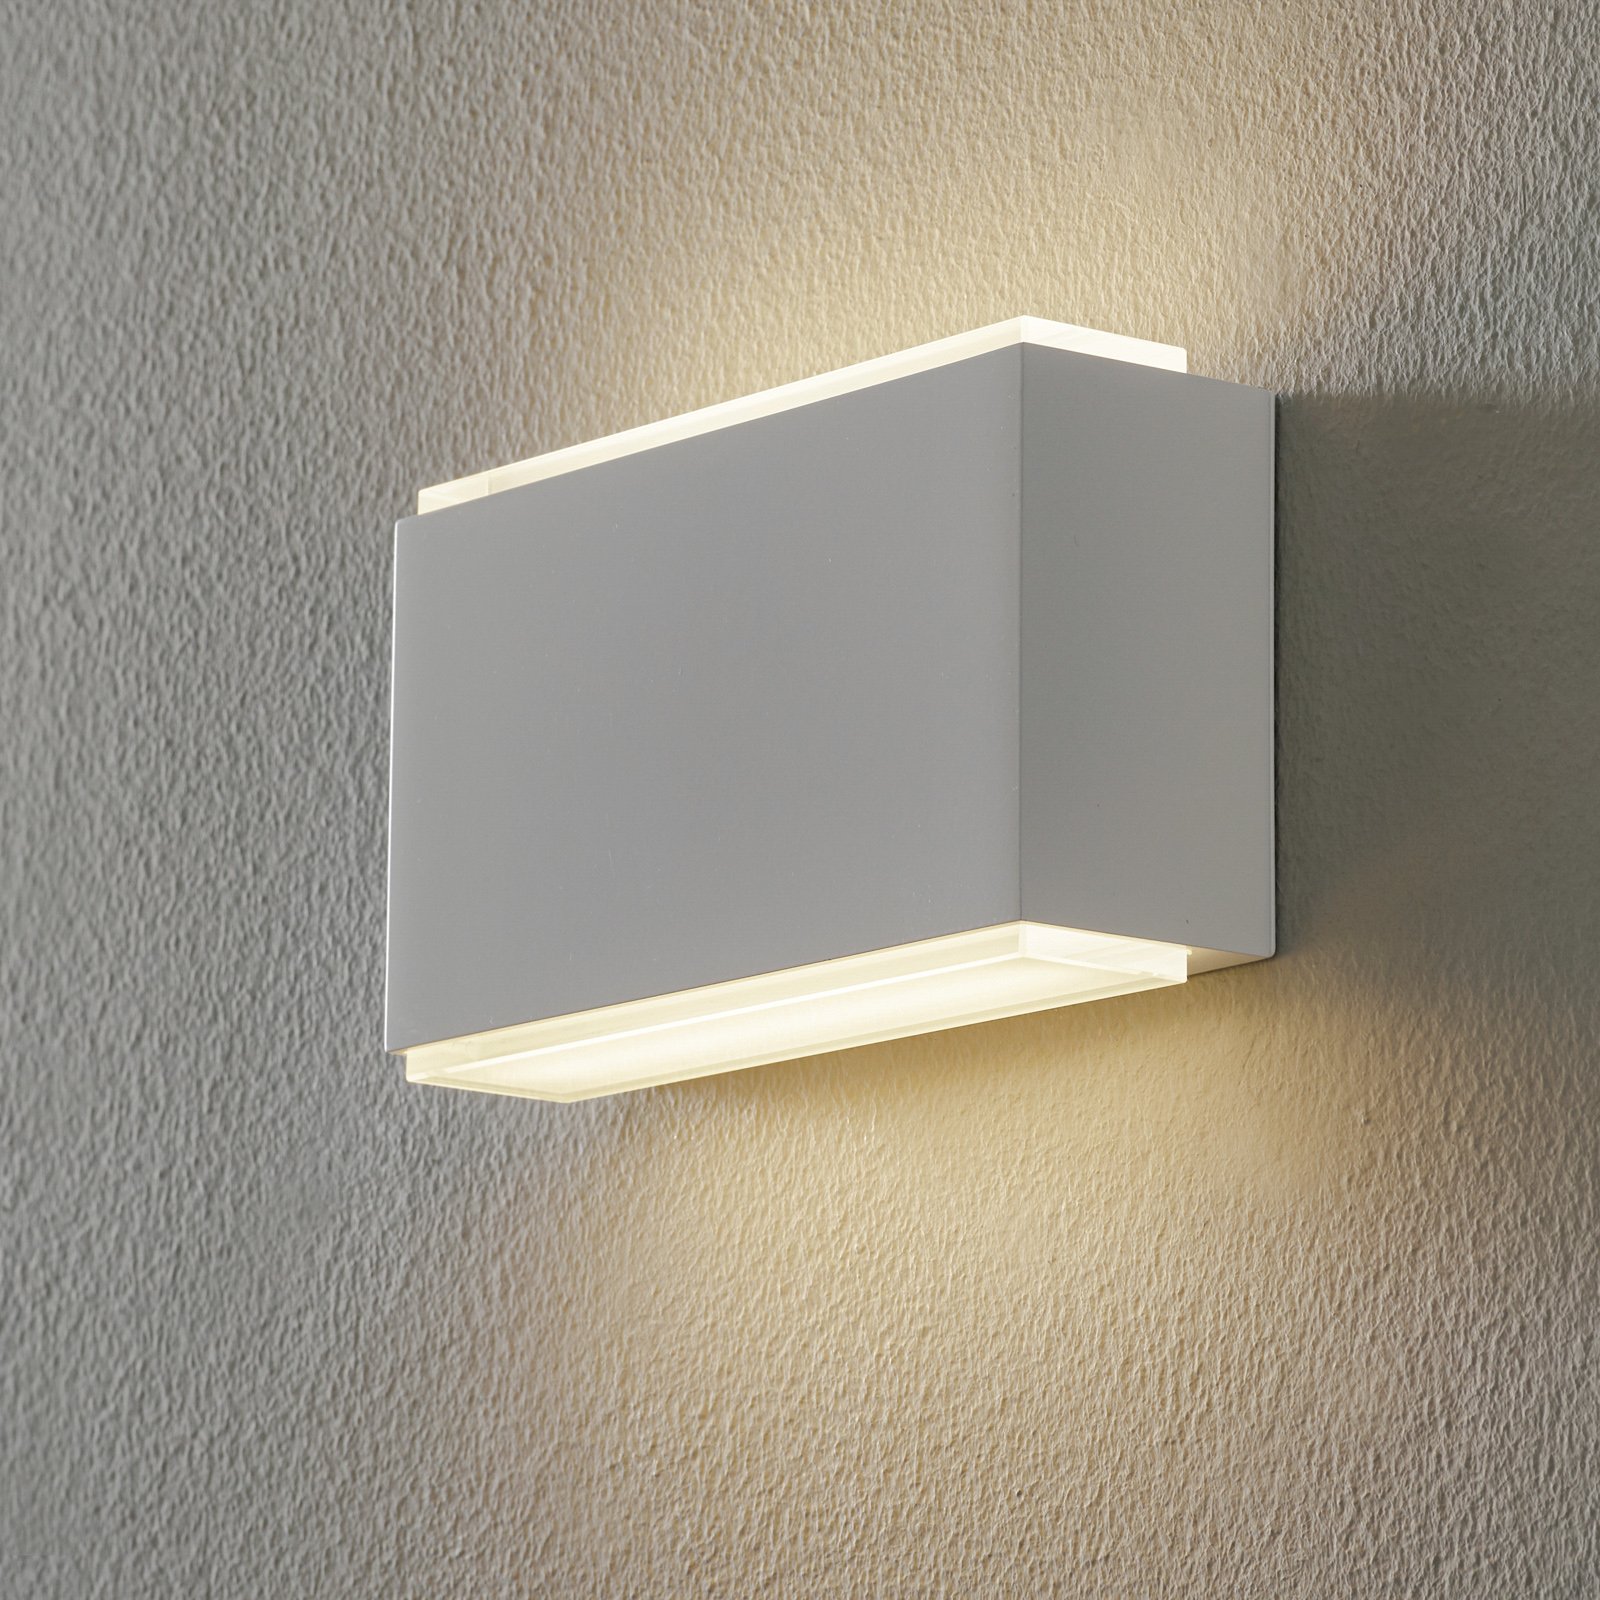 BEGA 23015 LED wall light 3,000K 18cm white 1260lm